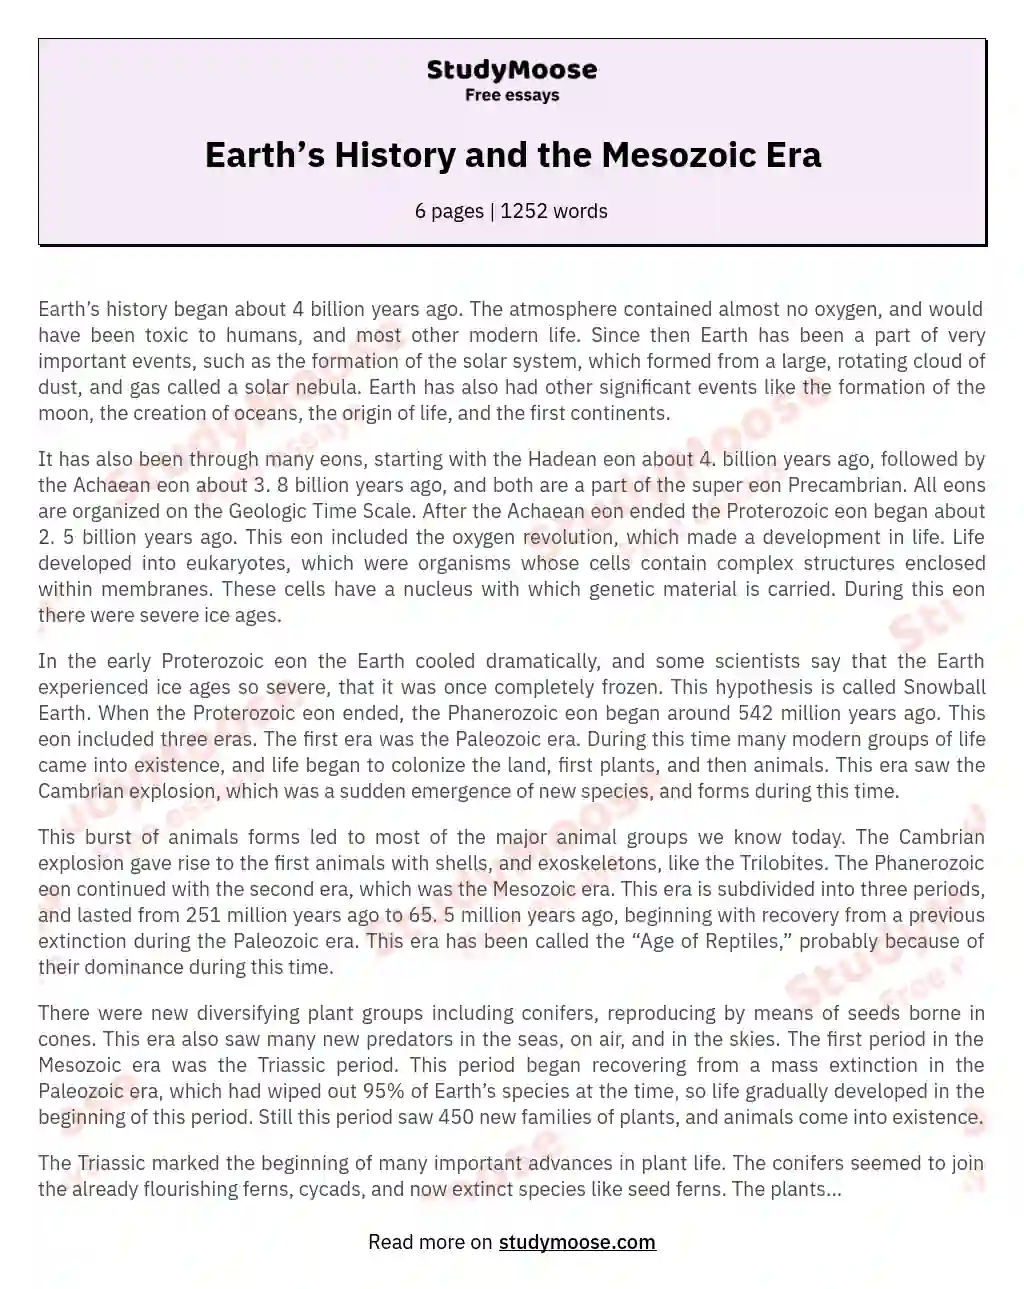 Earth’s History and the Mesozoic Era essay